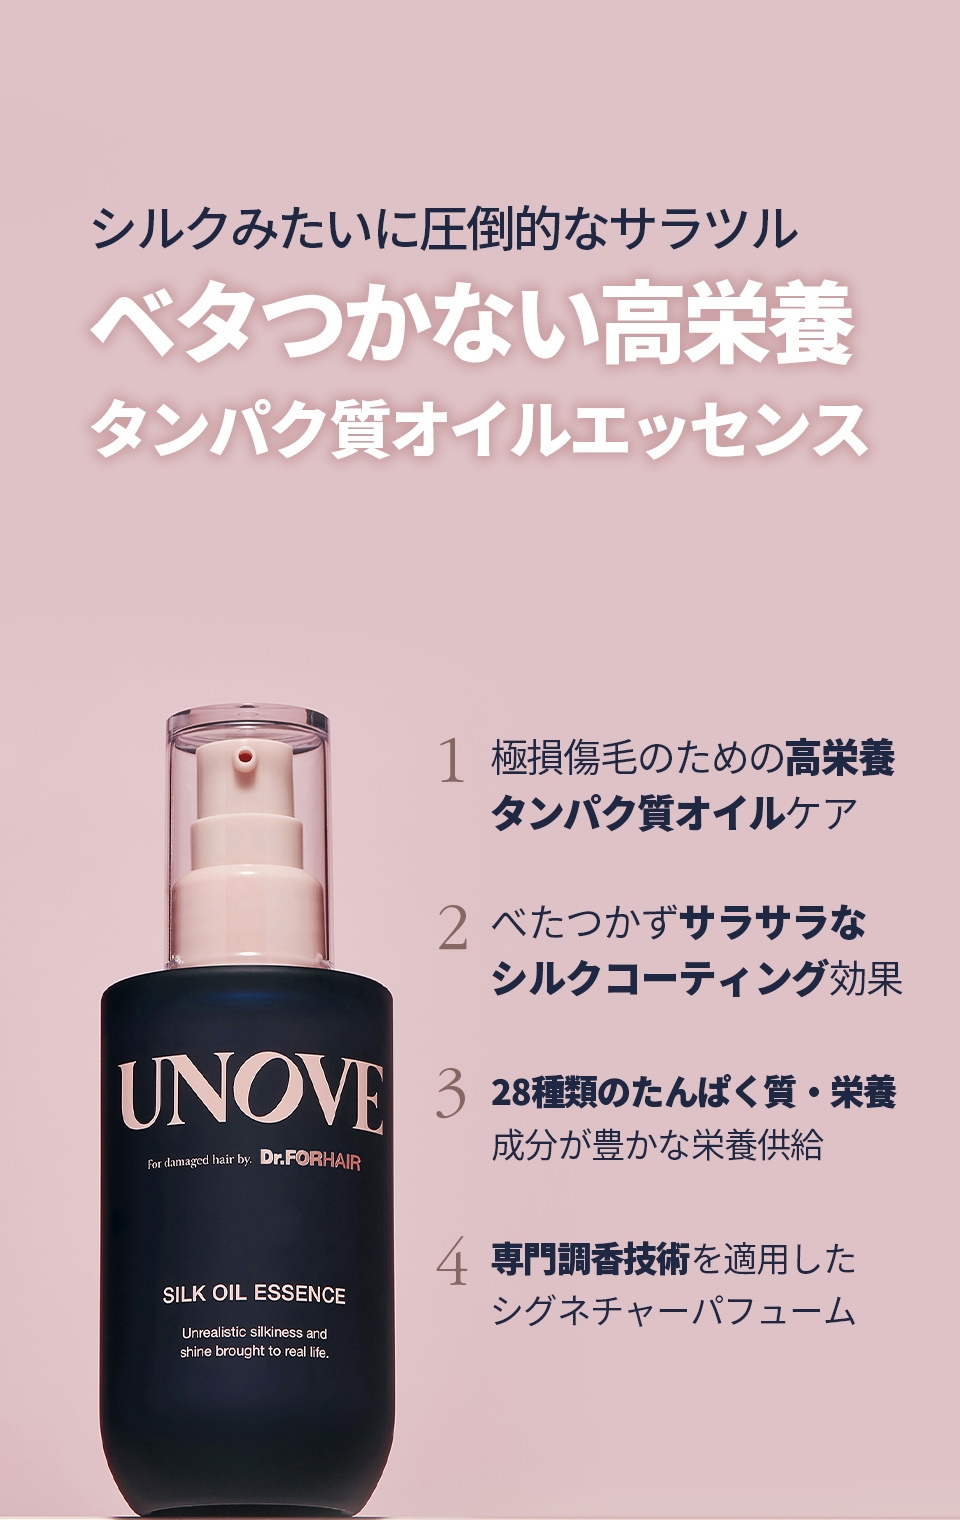 アノブ(UNOVE)] シルクオイルエッセンス70ml > Cosmetics